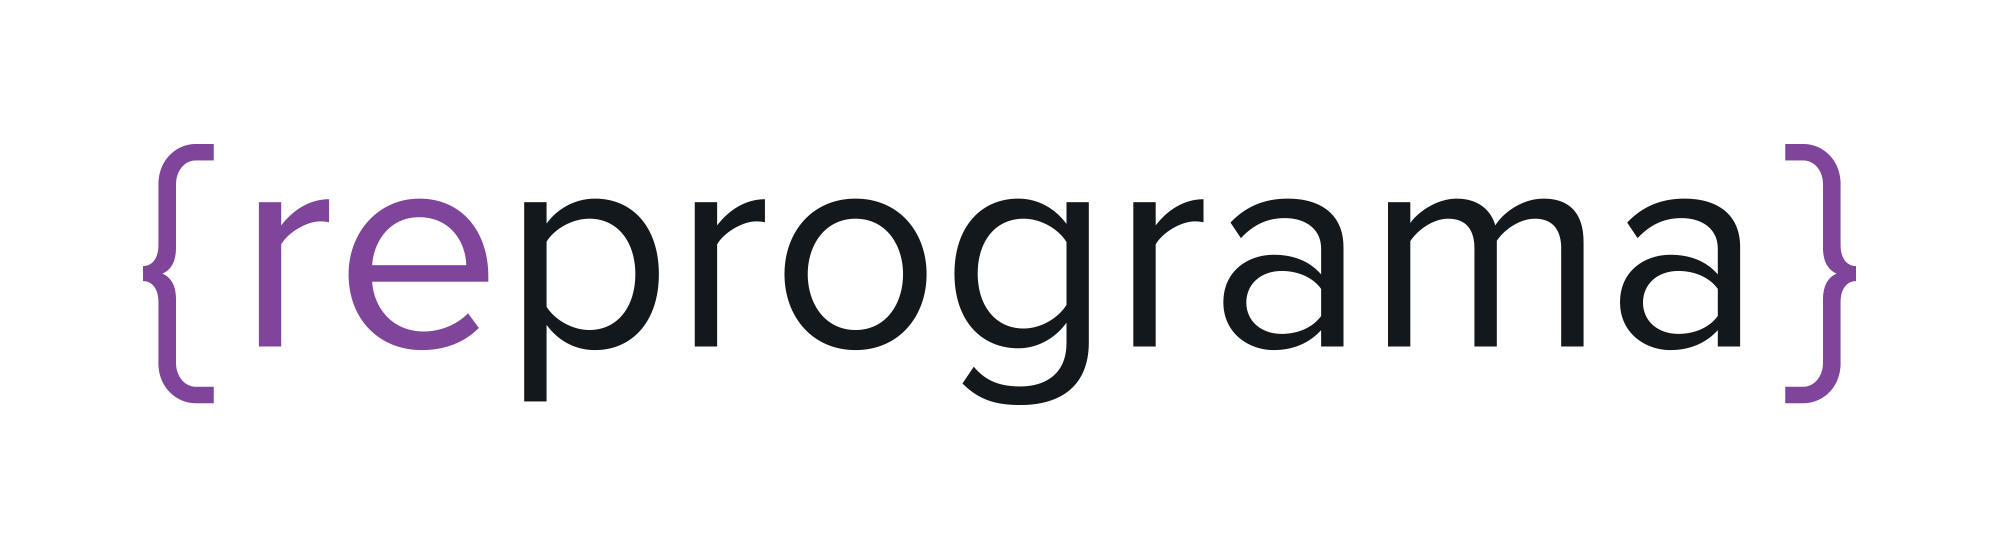 logo reprograma